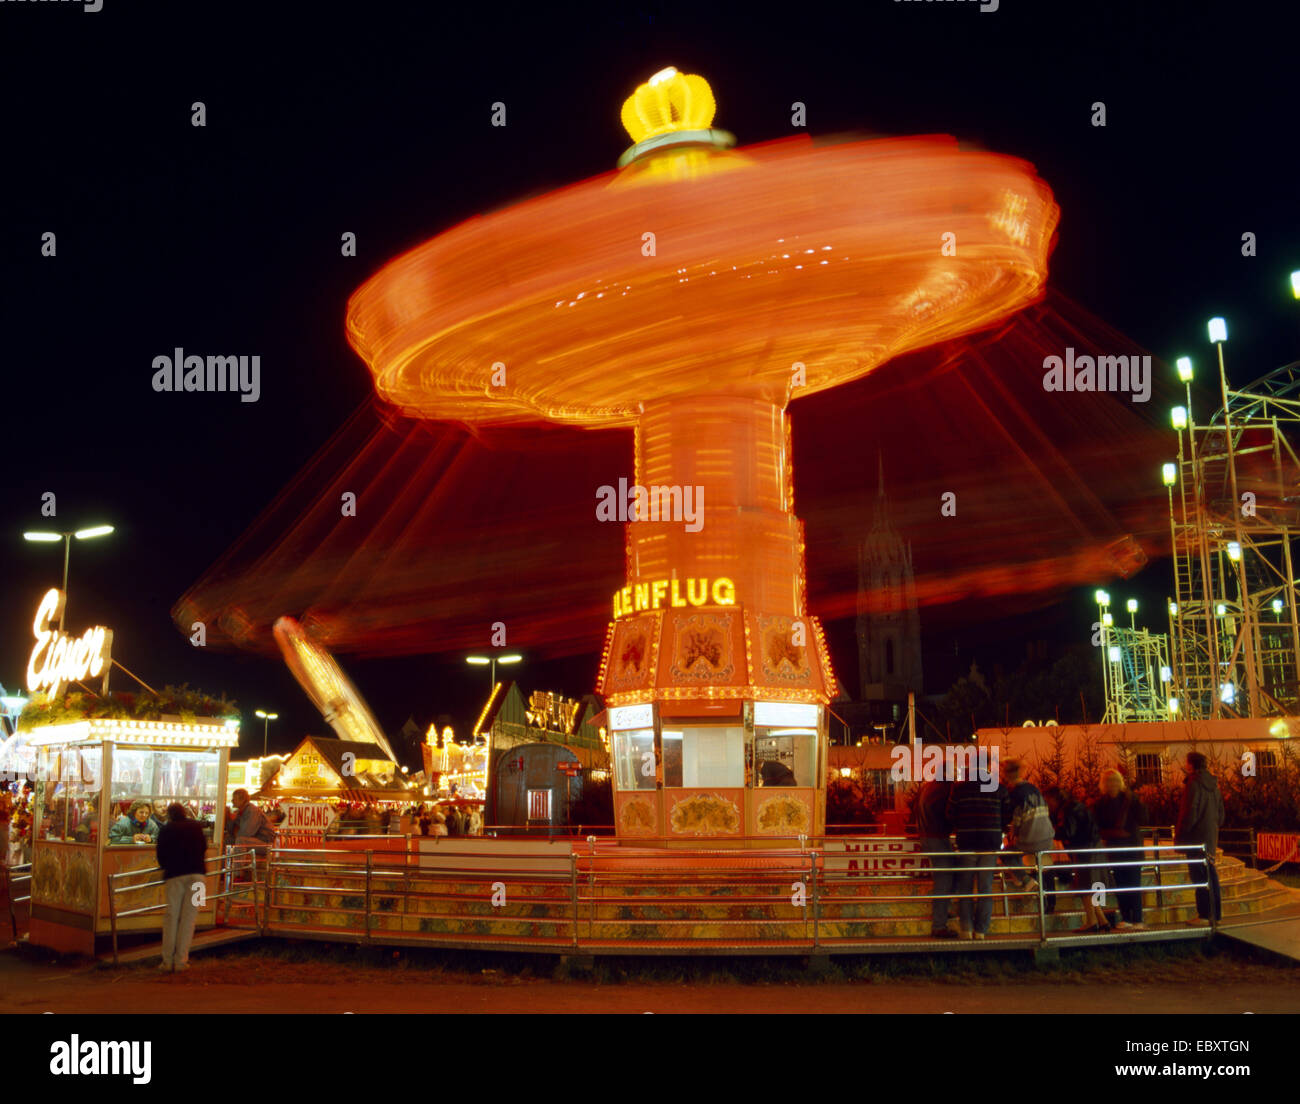 illuminated carousel at night Stock Photo